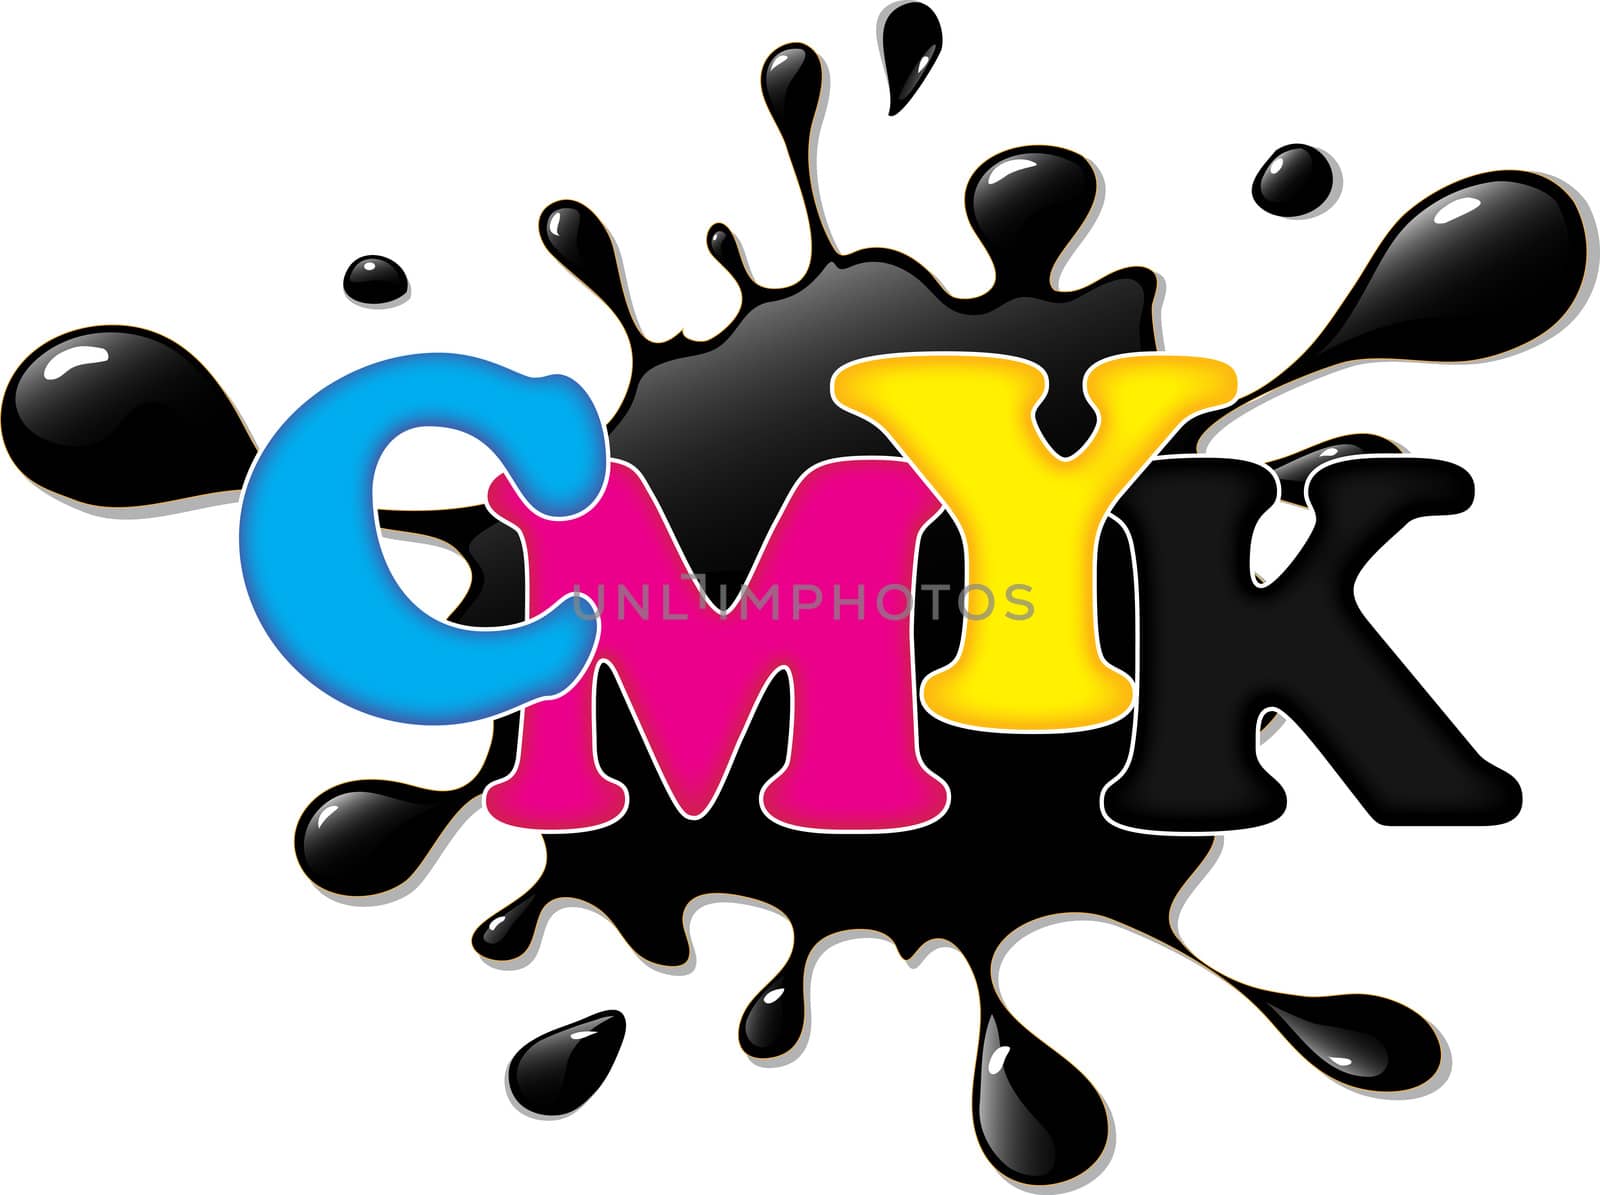 CMYK ink by nickylarson974